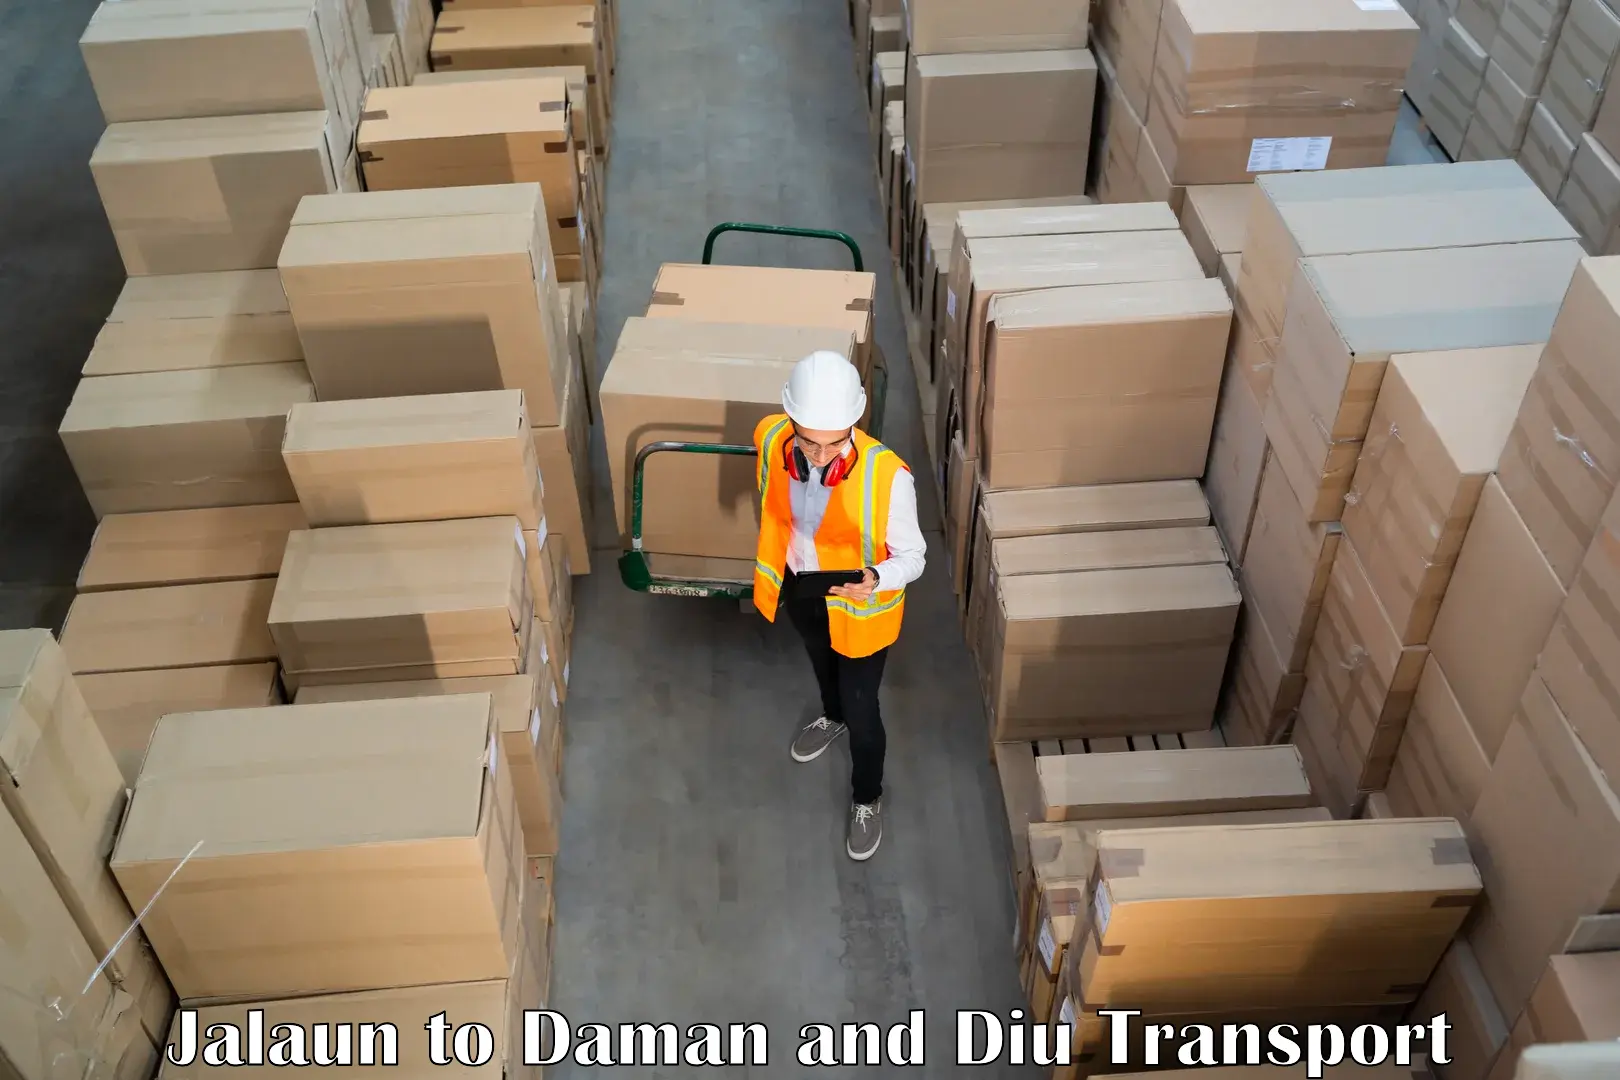 Domestic transport services Jalaun to Daman and Diu